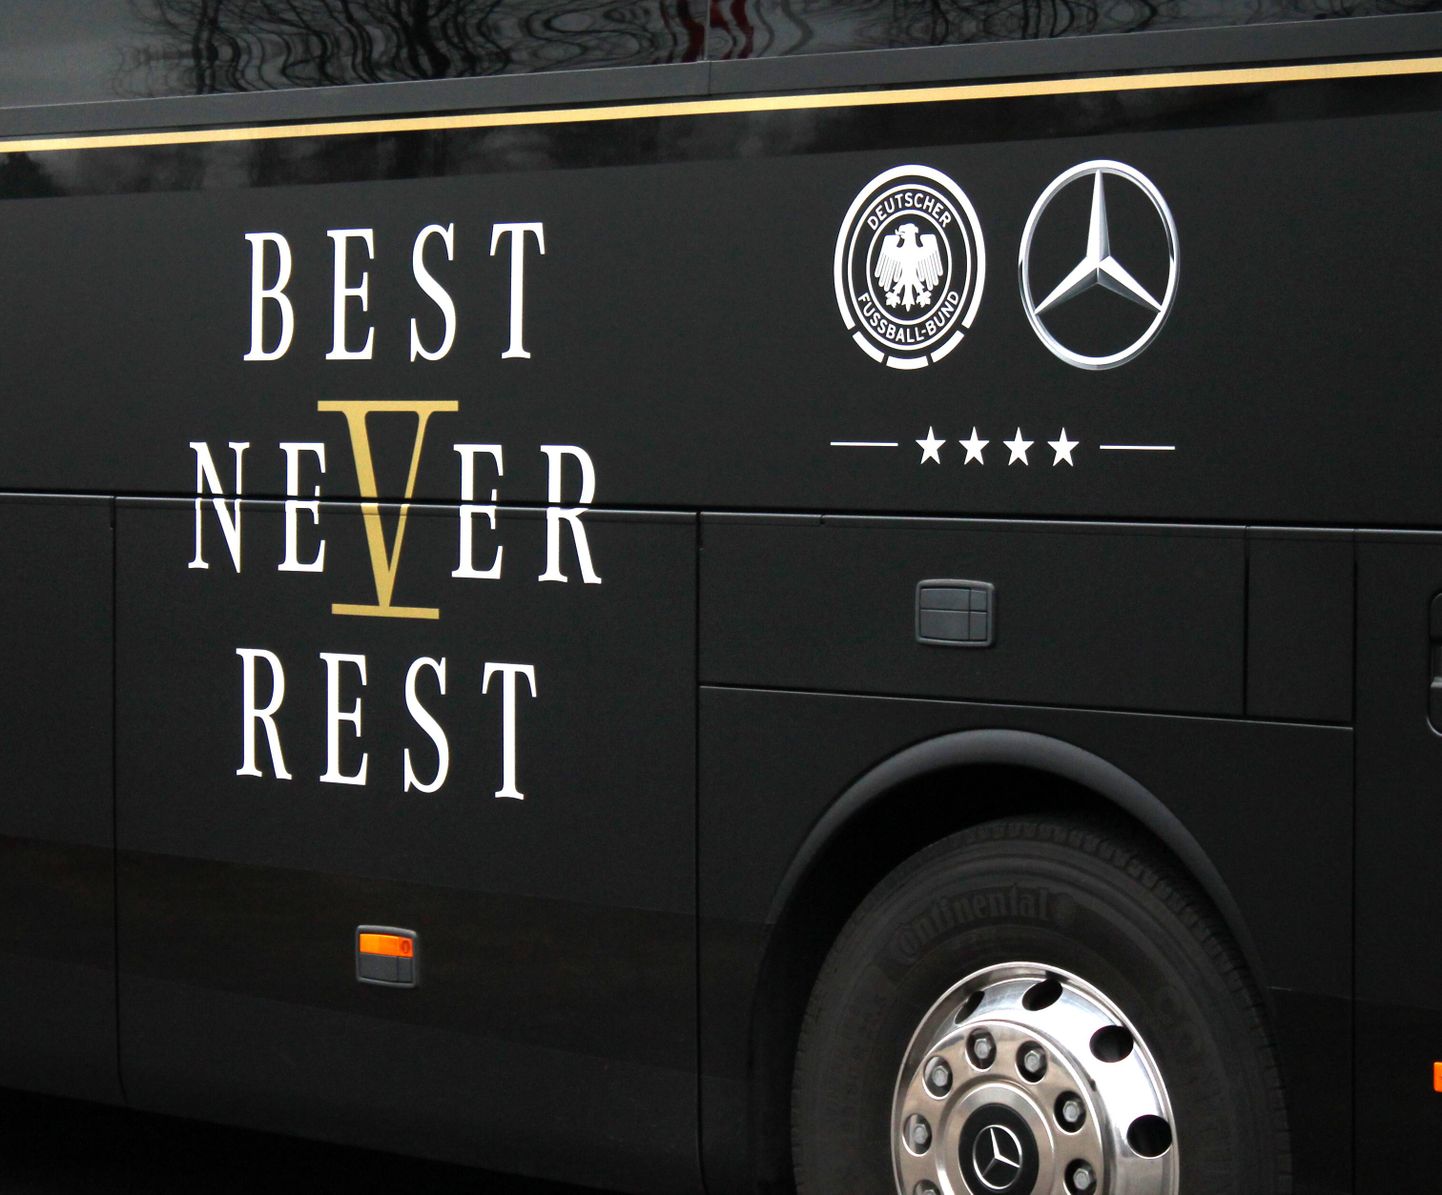 Saksamaa jalgpallikoondise bussi ehib maailmameistrile kohane kiri.